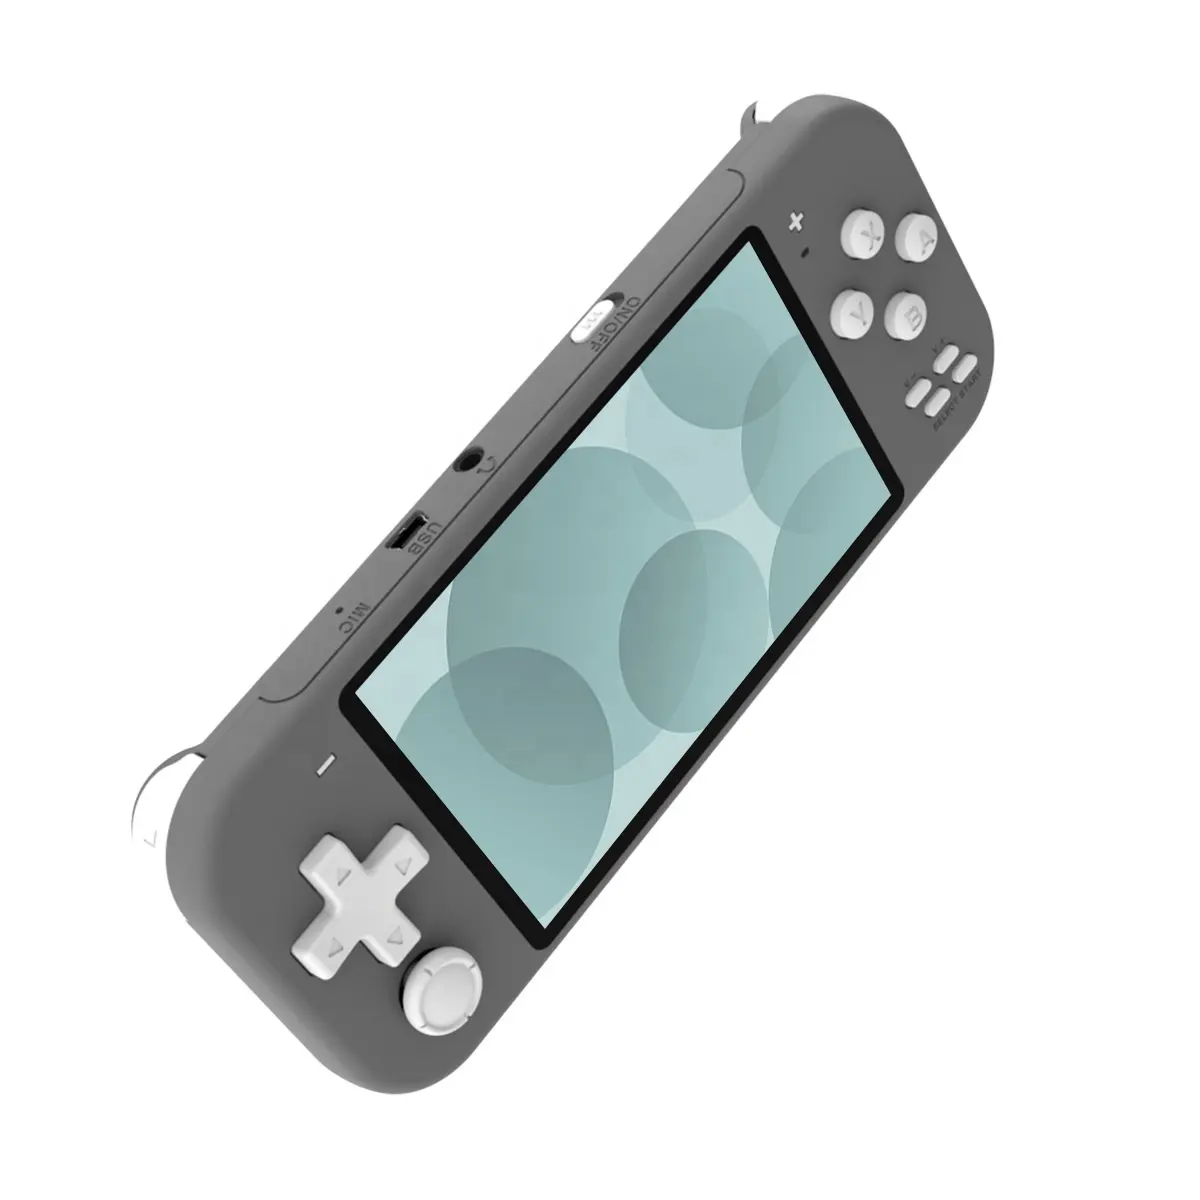 Vendita calda X20 Mini Console di gioco portatile supporta il Download e salvare i progressi del gioco schermo da 4.3 pollici X20 Mini palmare giocatore di gioco